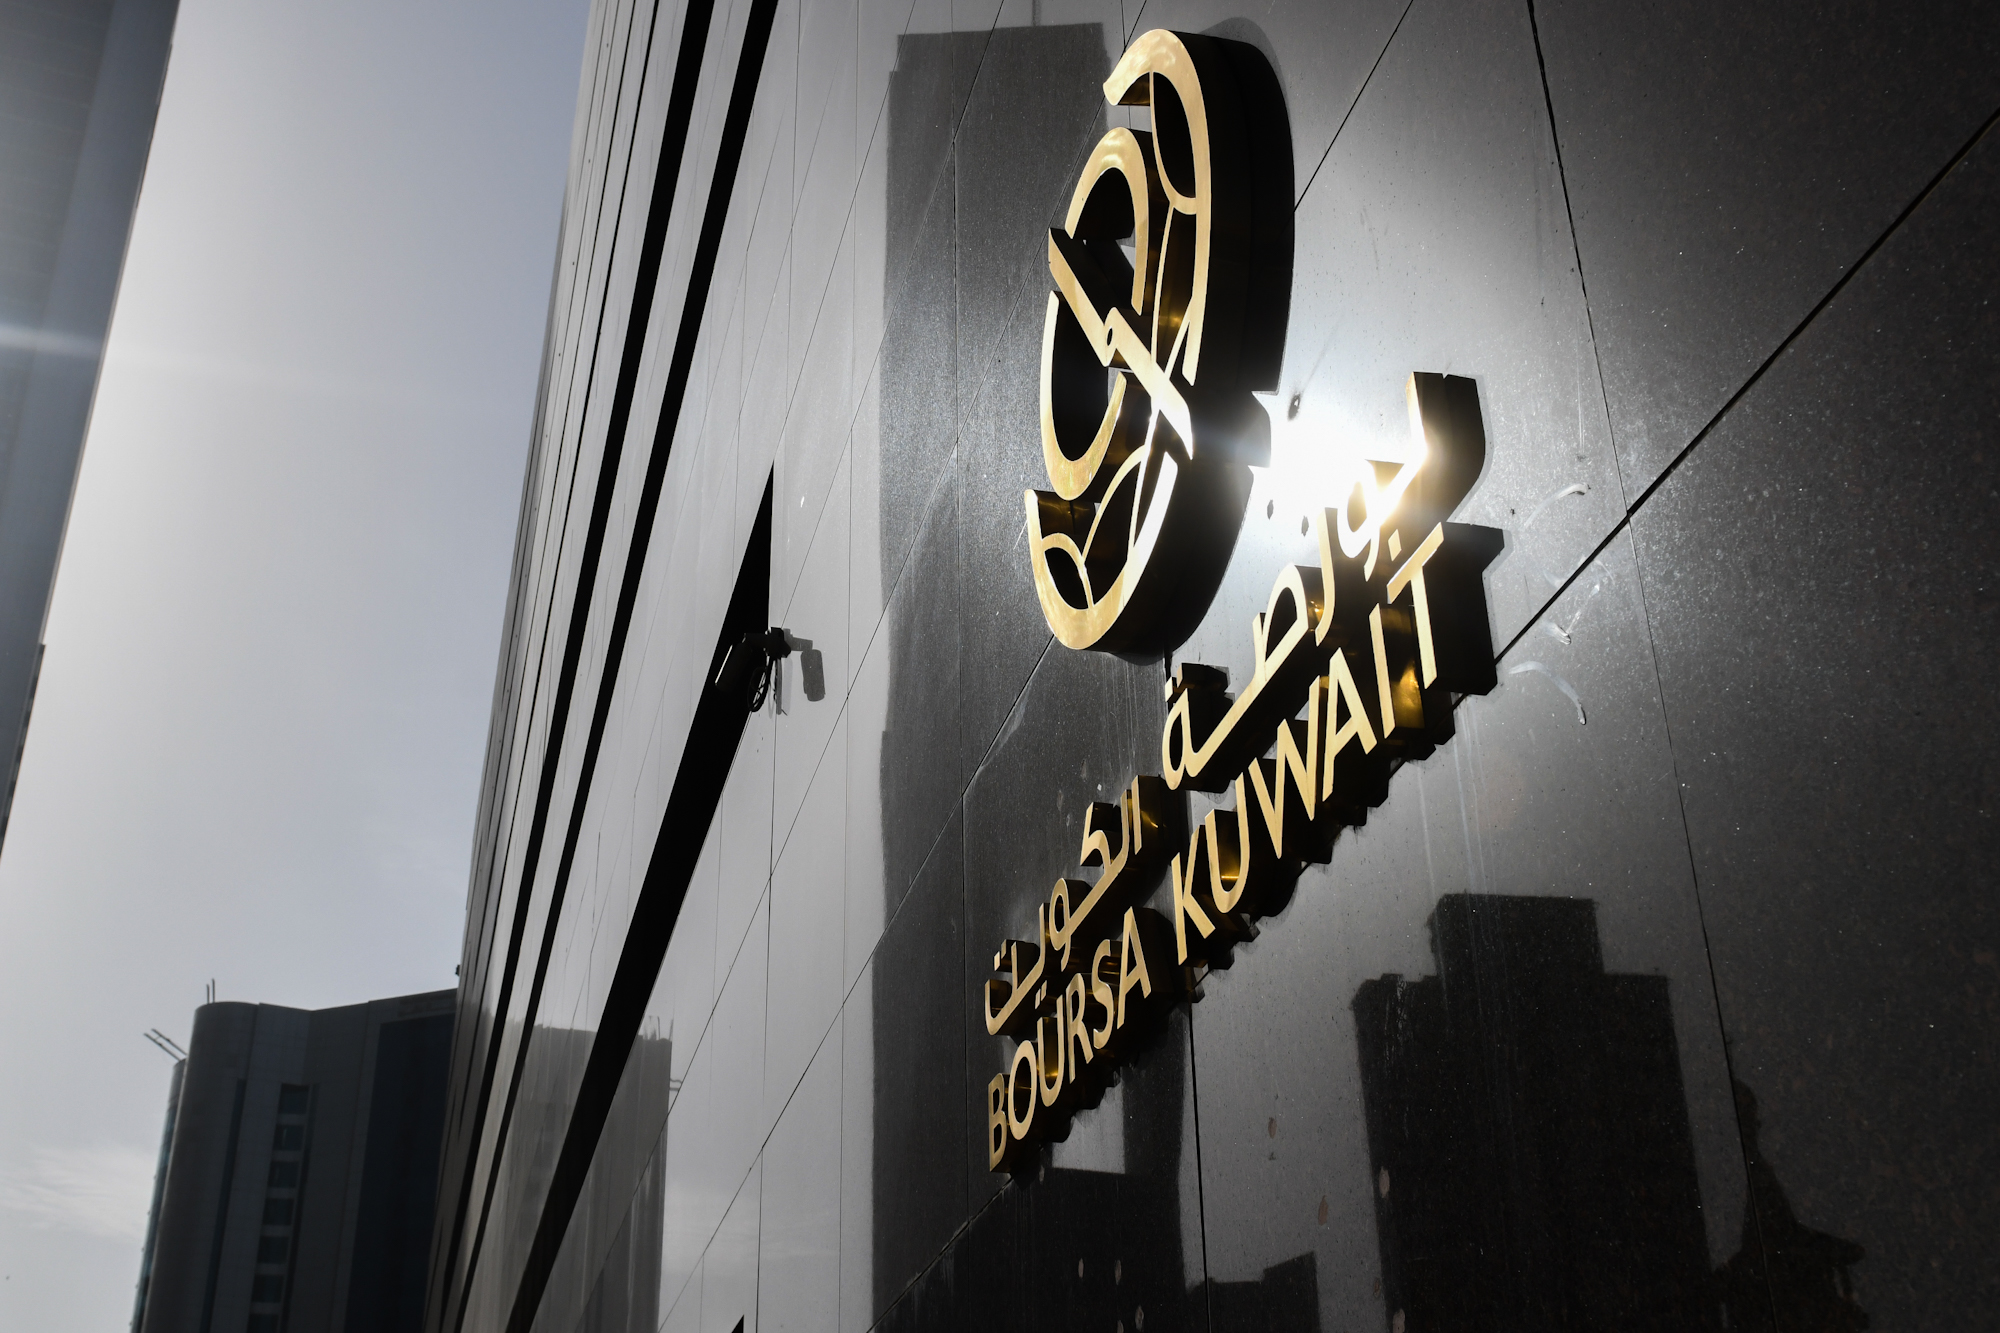 بورصة الكويت تغلق تعاملاتها على انخفاض المؤشر العام 7ر25 نقطة إلى 90ر7716 بنسبة 33ر0 في المئة                                                                                                                                                             